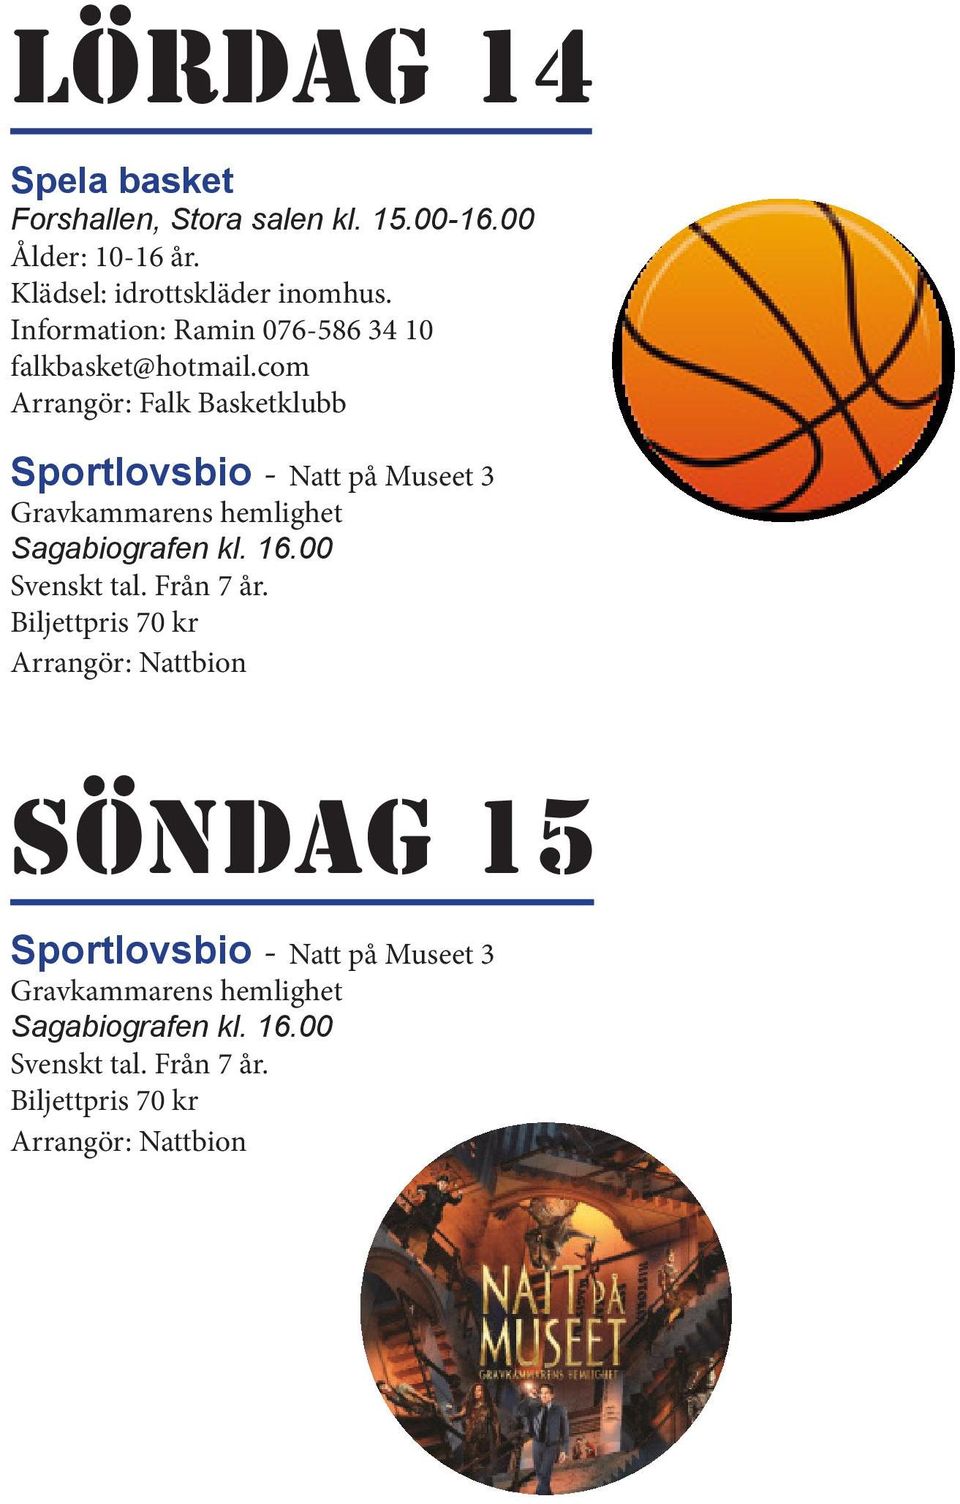 com Arrangör: Falk Basketklubb Sportlovsbio - Natt på Museet 3 Gravkammarens hemlighet Sagabiografen kl. 16.